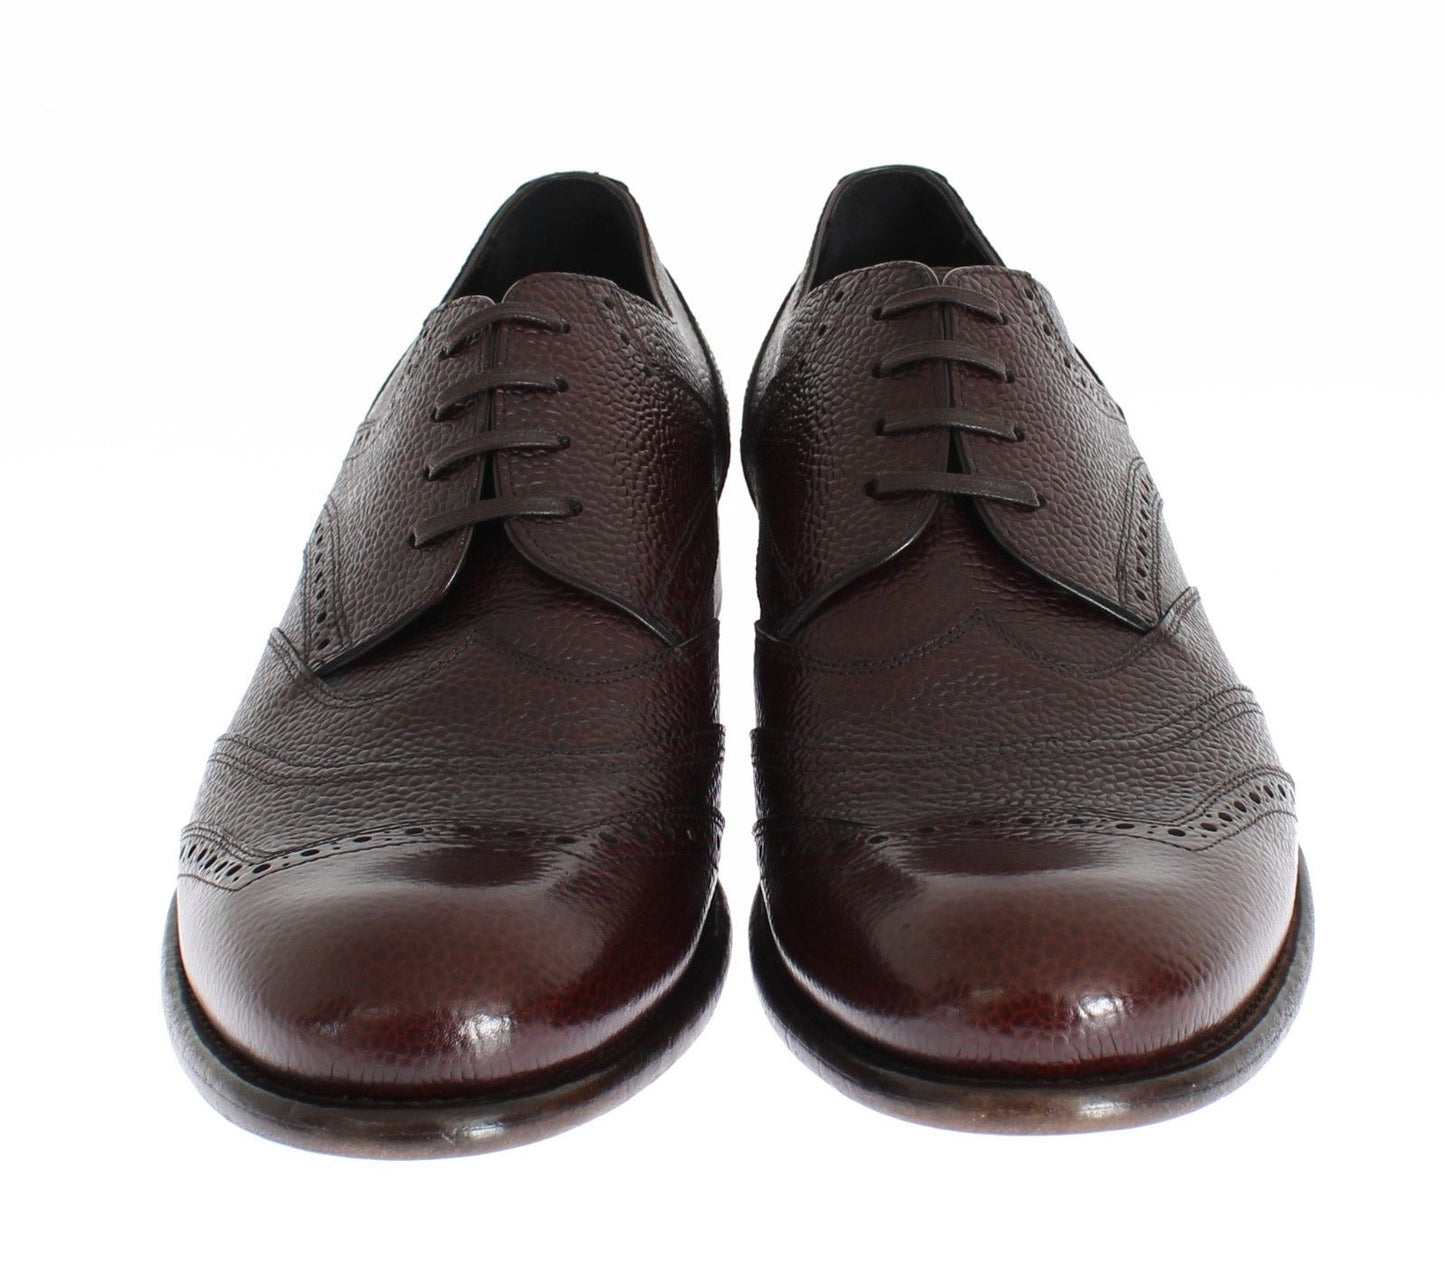 Brown Bordeaux Leather Dress Shoes